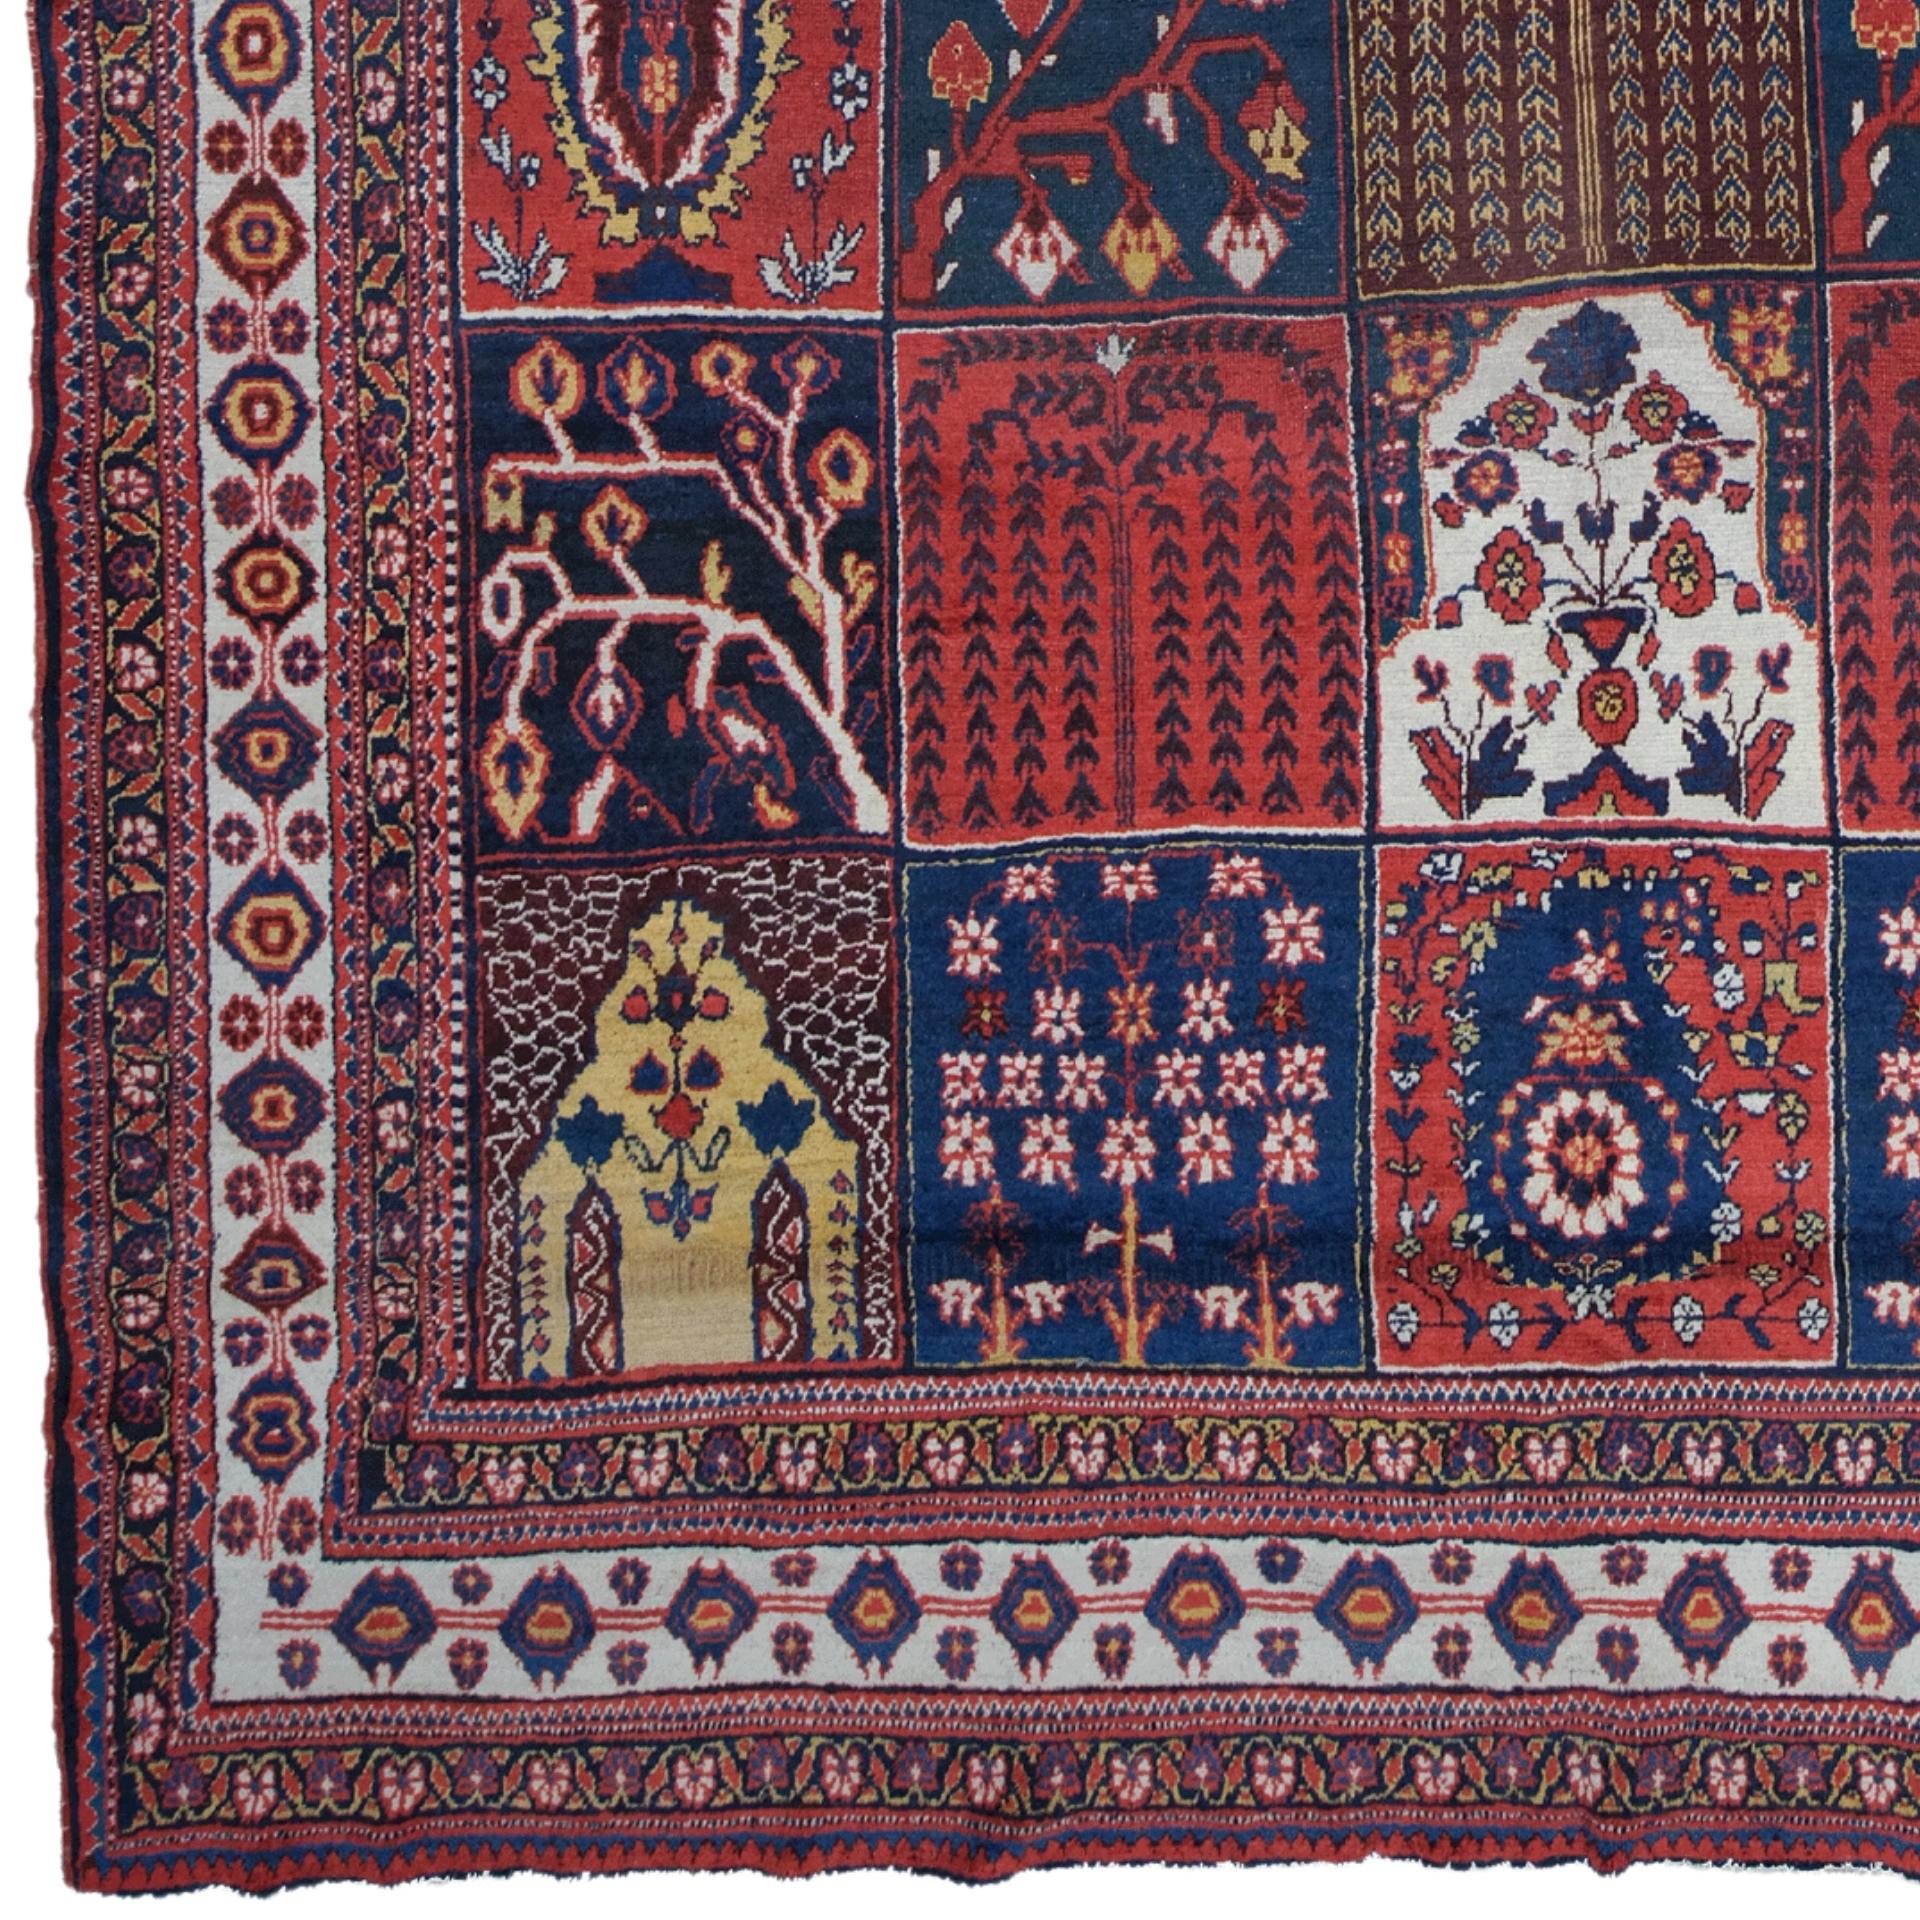 Tapis ancien Bakhtiari Qashqai - Tapis Qashqai du 19ème siècle

Ce tapis antique de Bakhtiari est un chef-d'œuvre tissé selon l'art et l'artisanat des nomades et des paysans vivant dans les montagnes du Zagros. Ce tapis, décoré de motifs